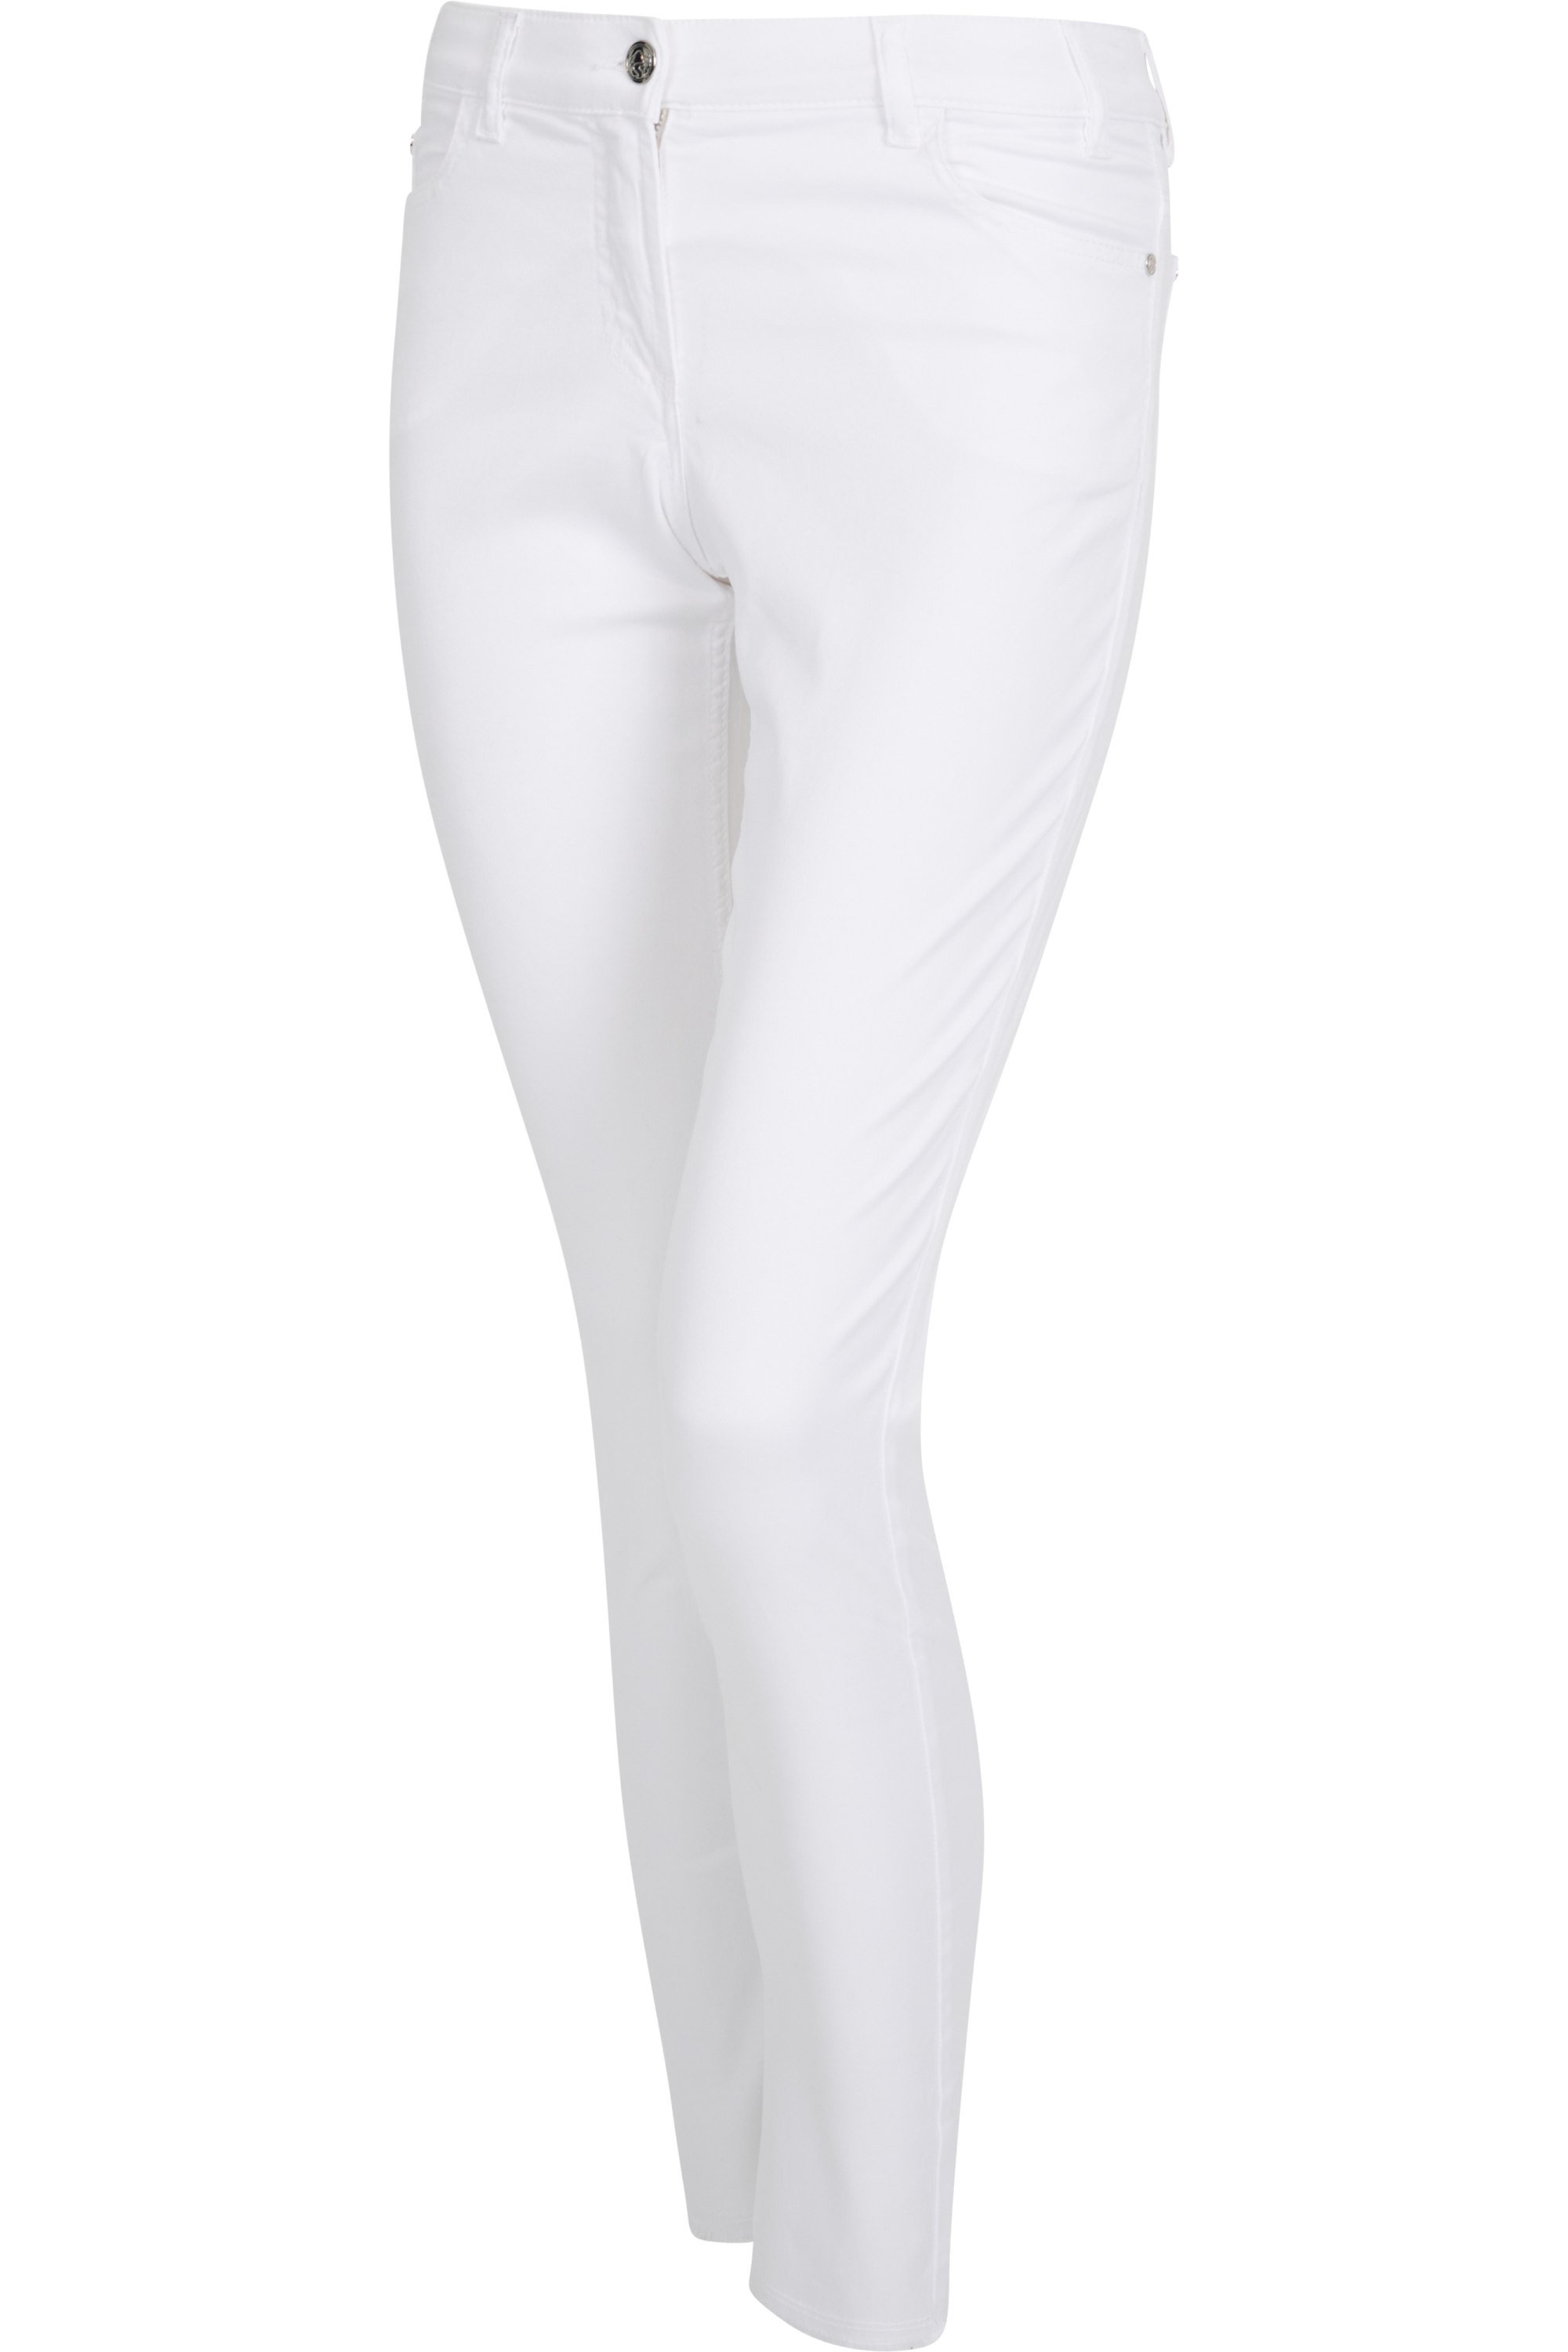 Sportalm kalhoty Enna bright white Velikost: 36